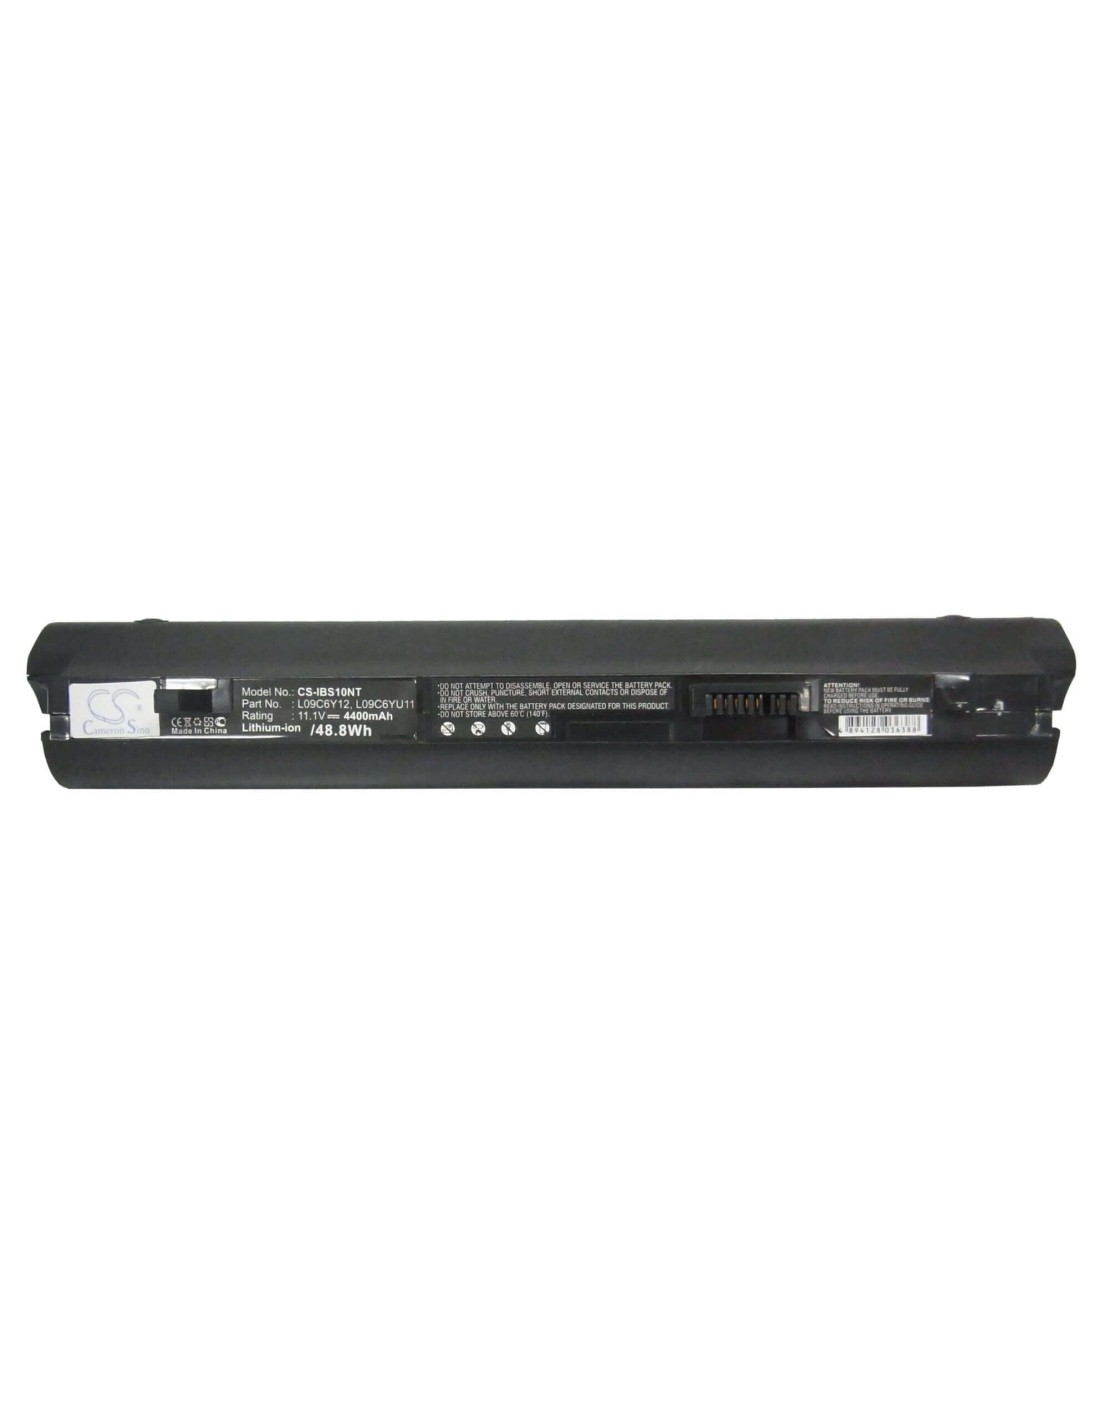 Black Battery for Lenovo Ideapad S10-2, Ideapad S10-2 20027, Ideapad S10-2 2957 11.1V, 4400mAh - 48.84Wh